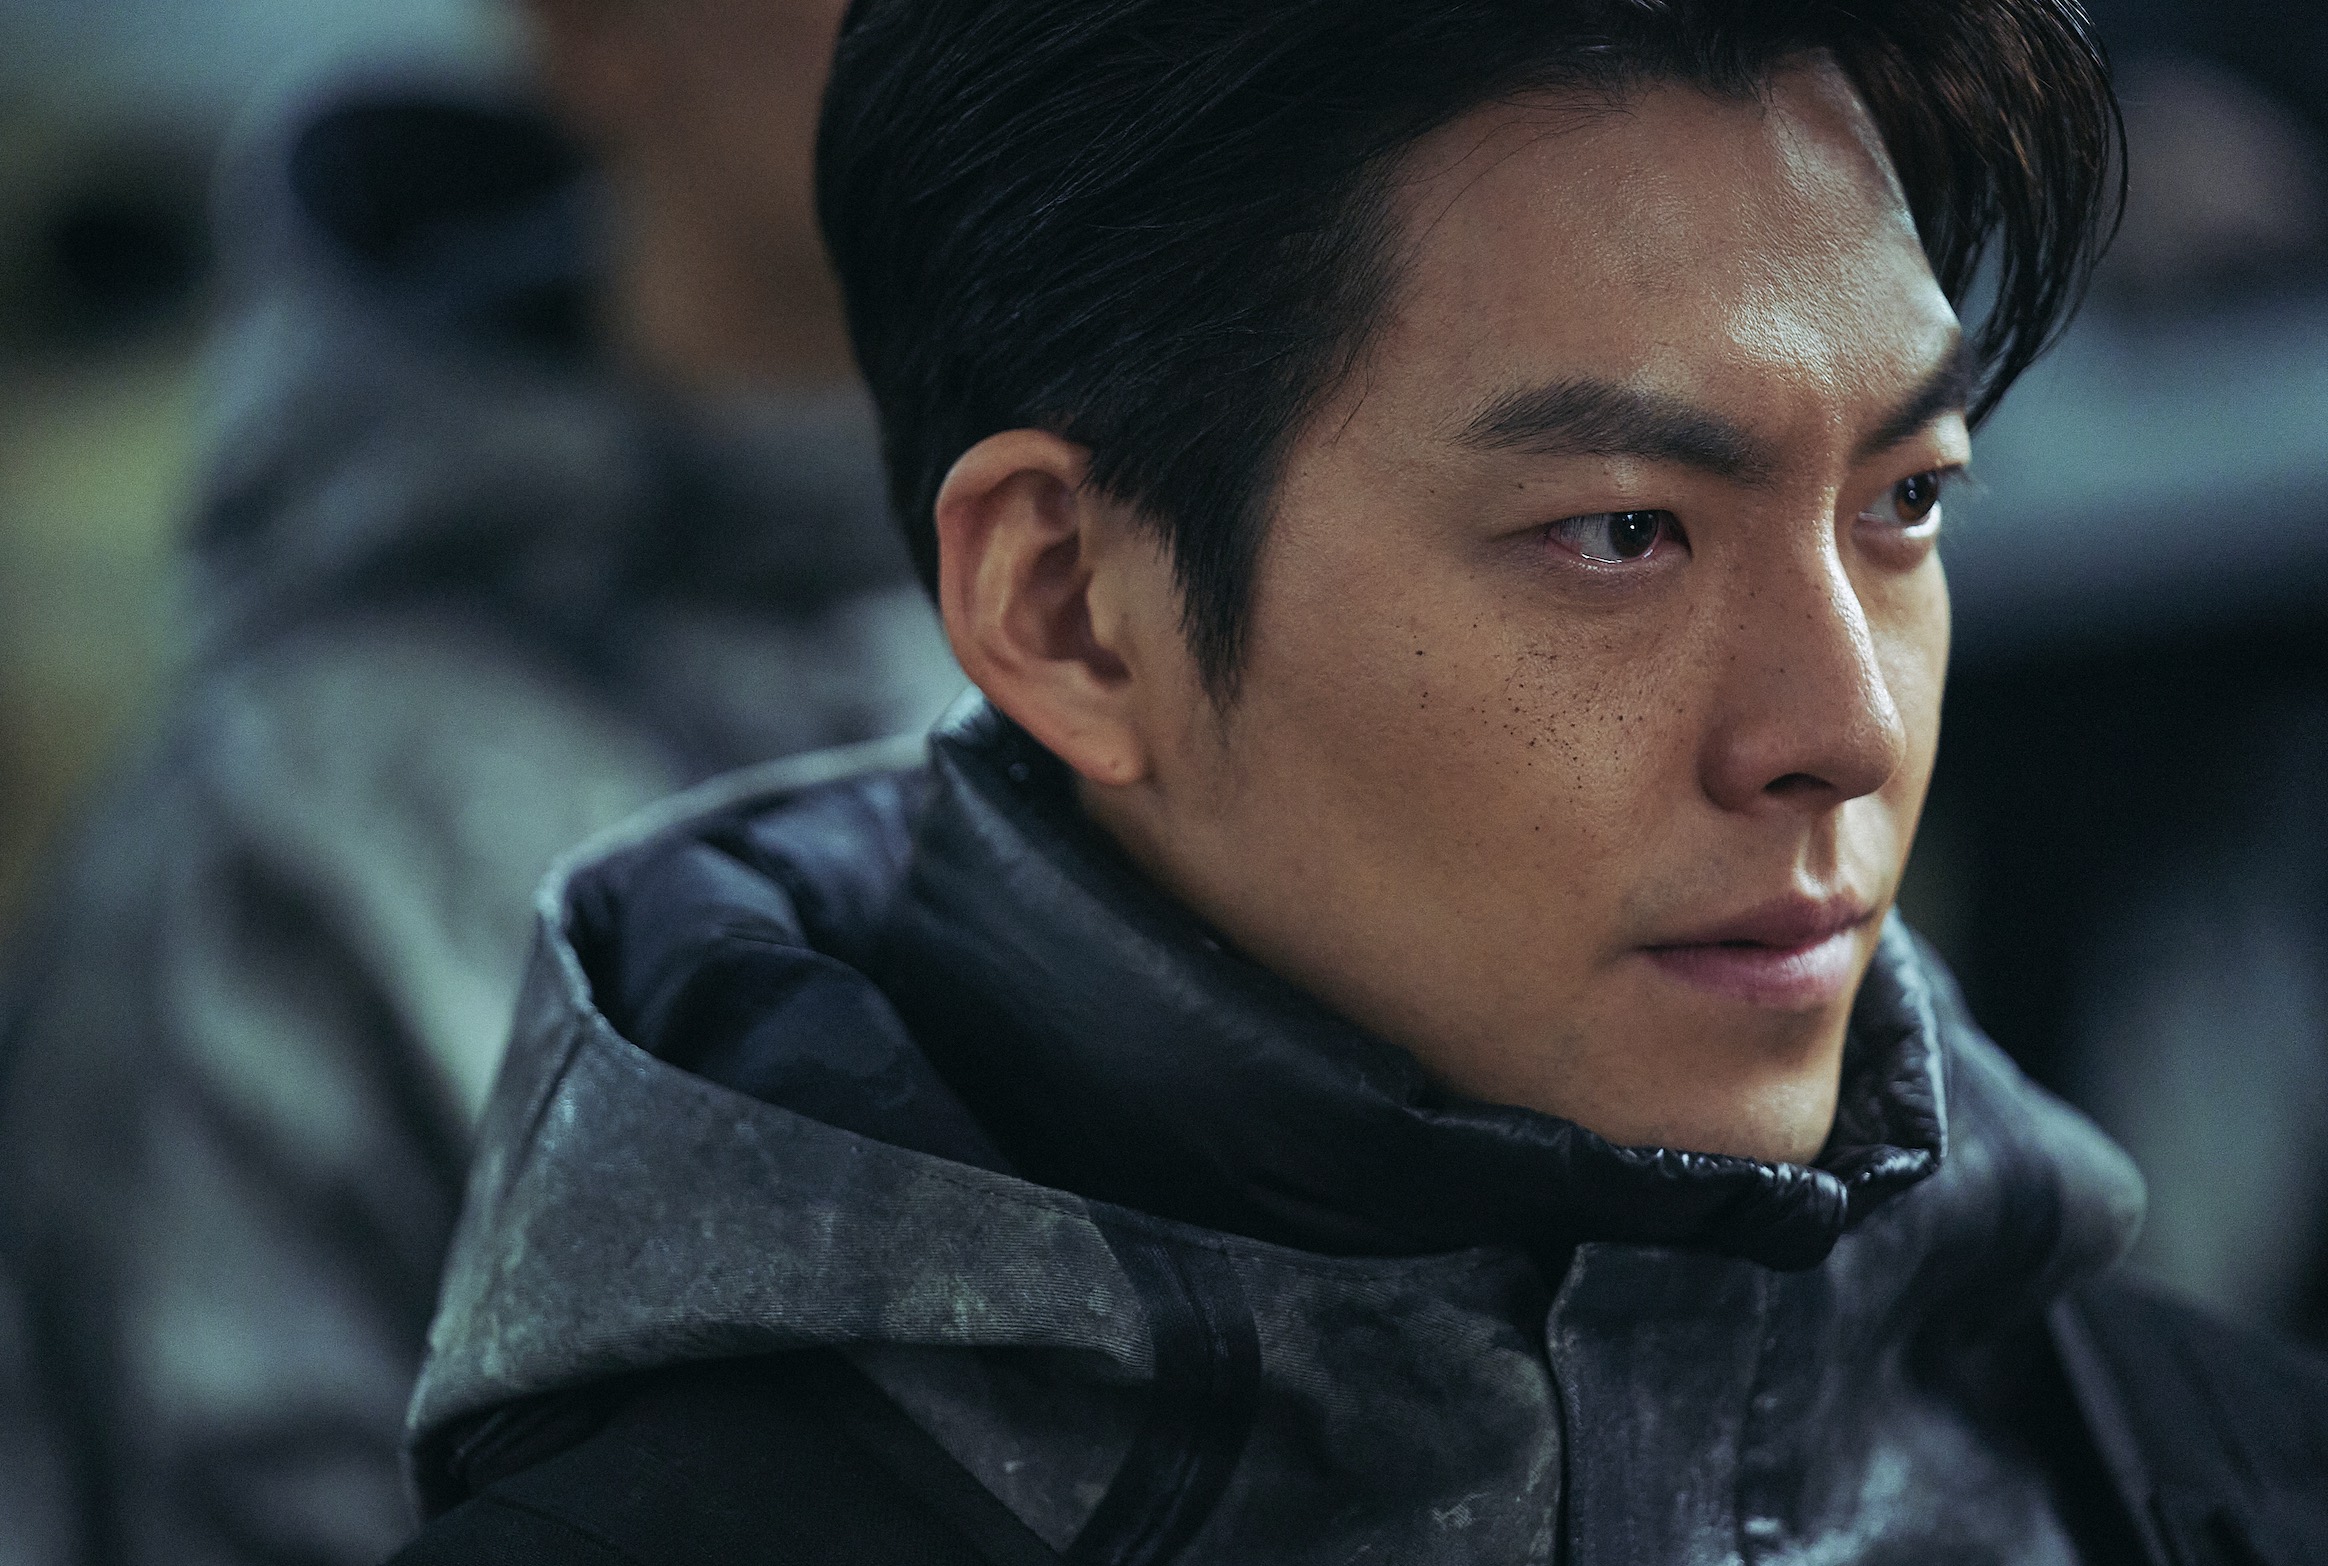 Black Knight Cast on Netflix - Kim Woo-Bin as 5-8